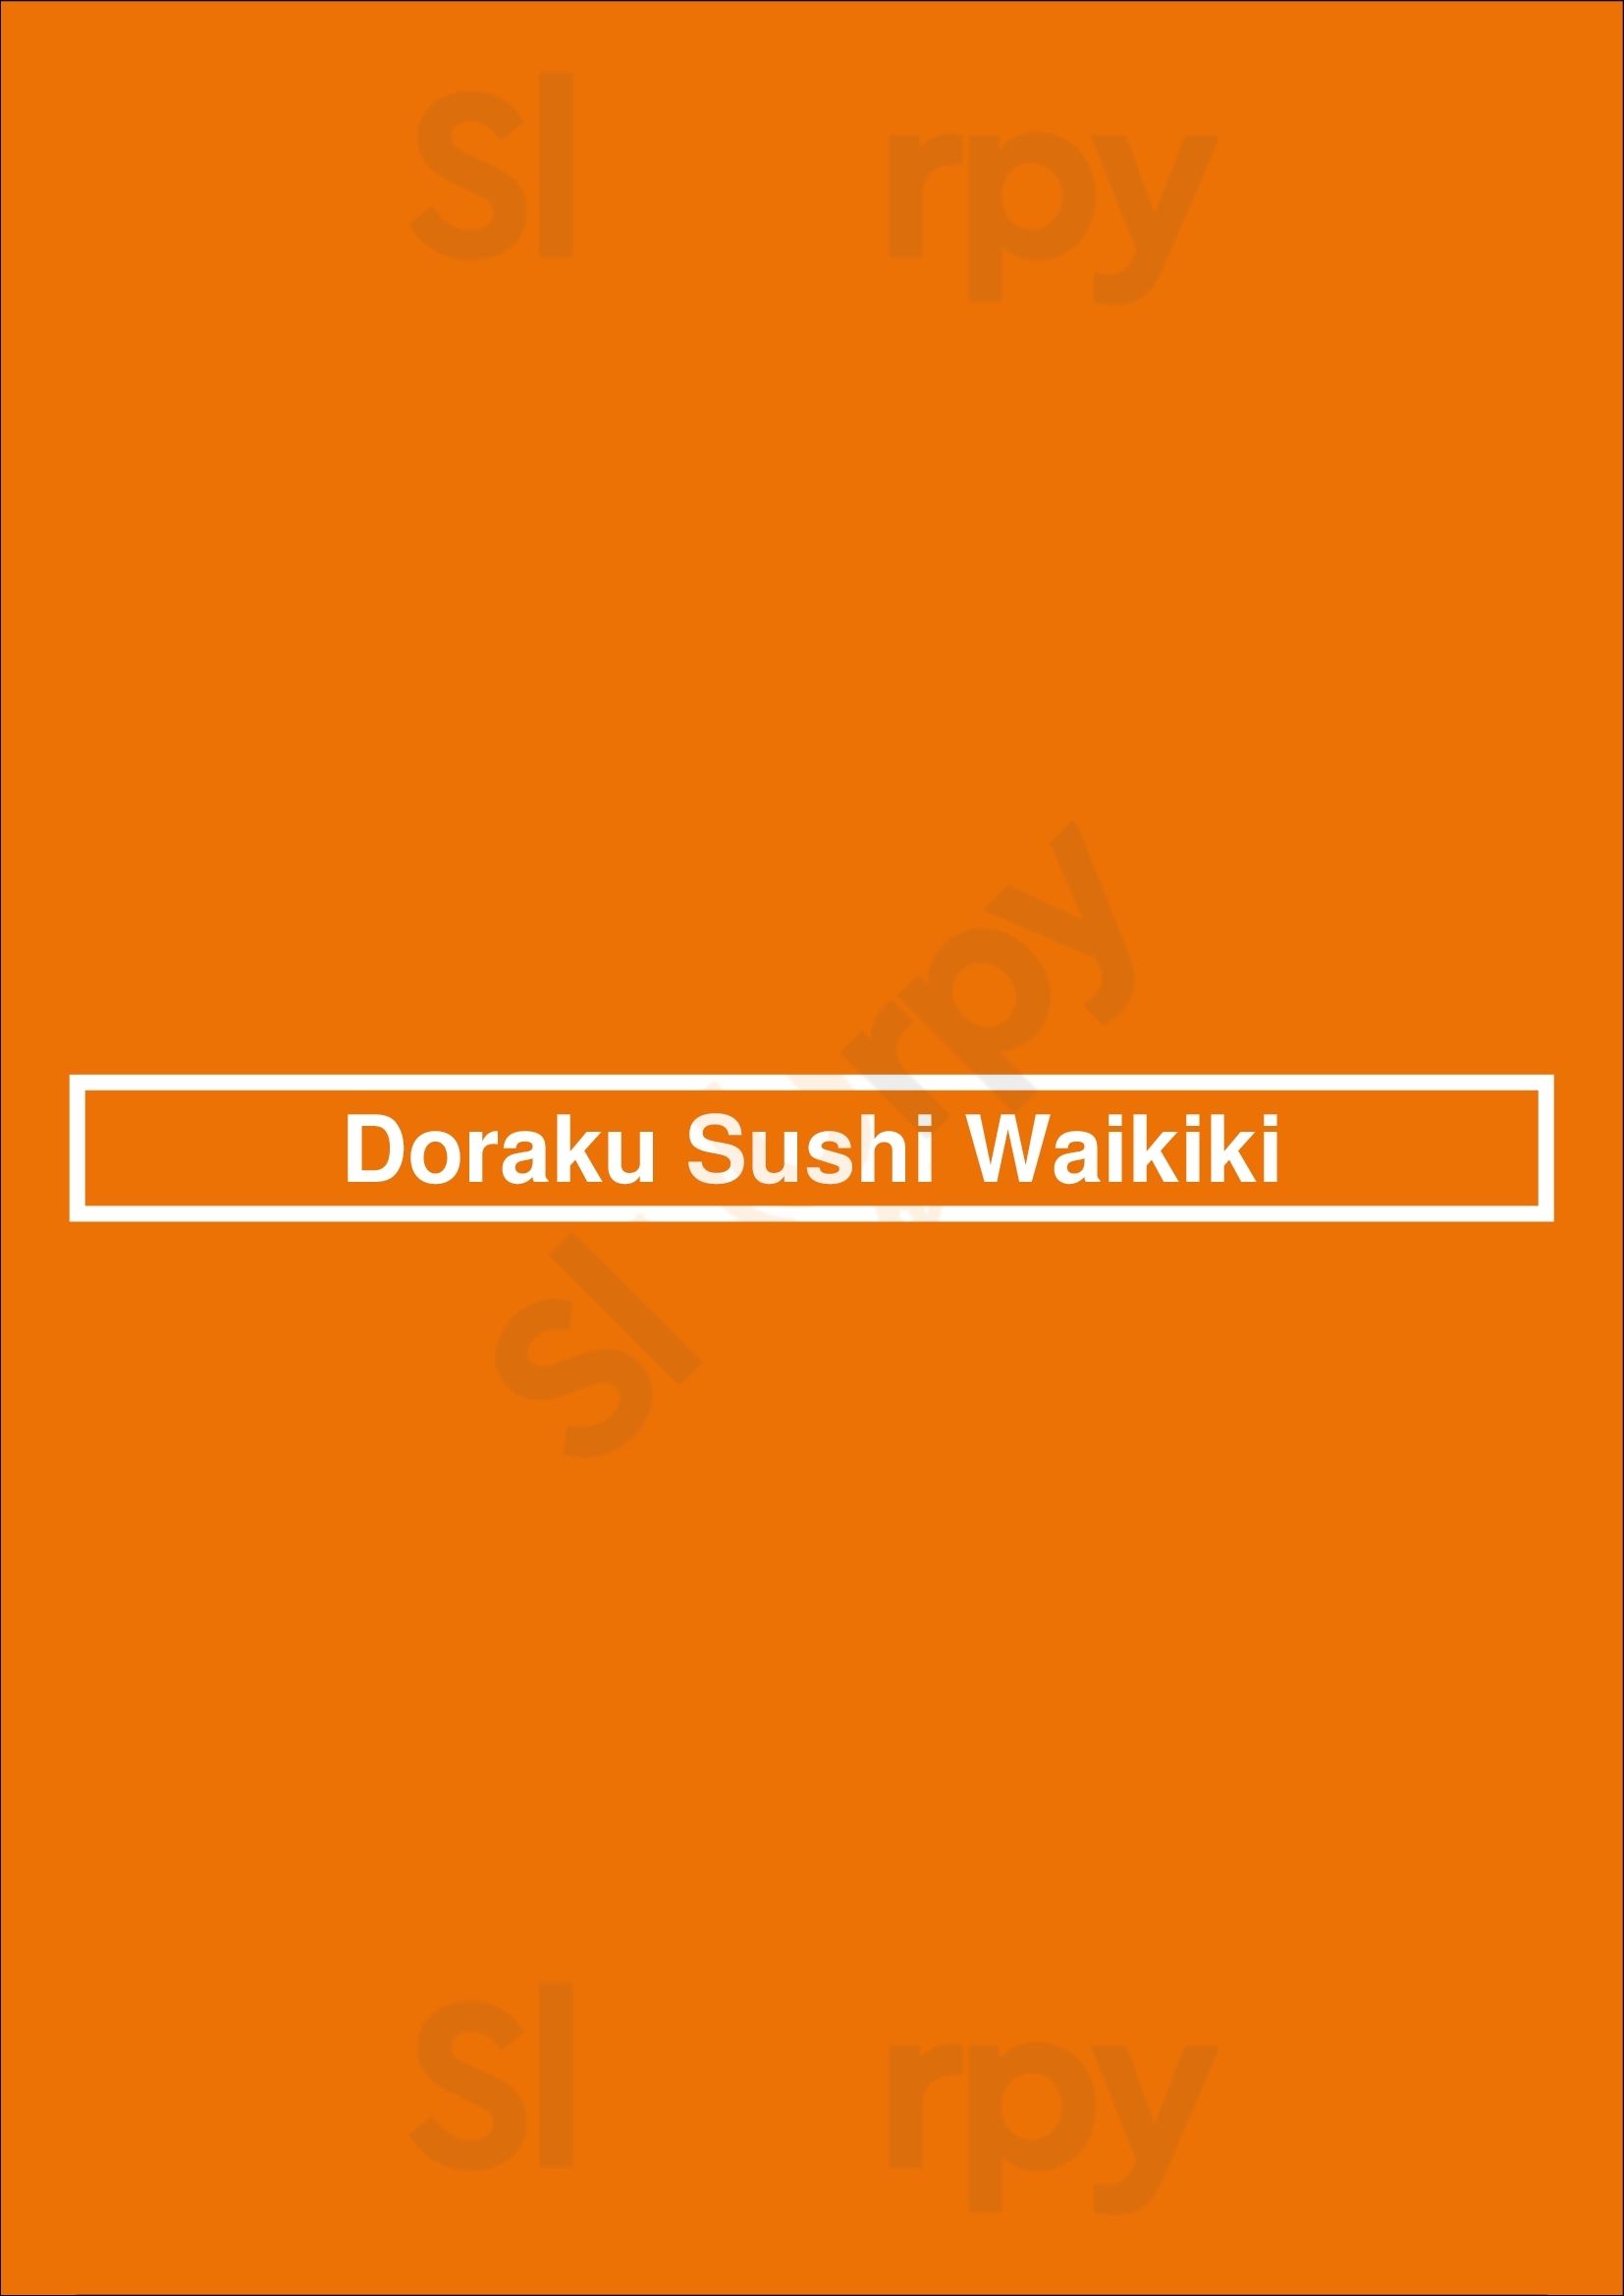 Doraku Sushi Waikiki Honolulu Menu - 1